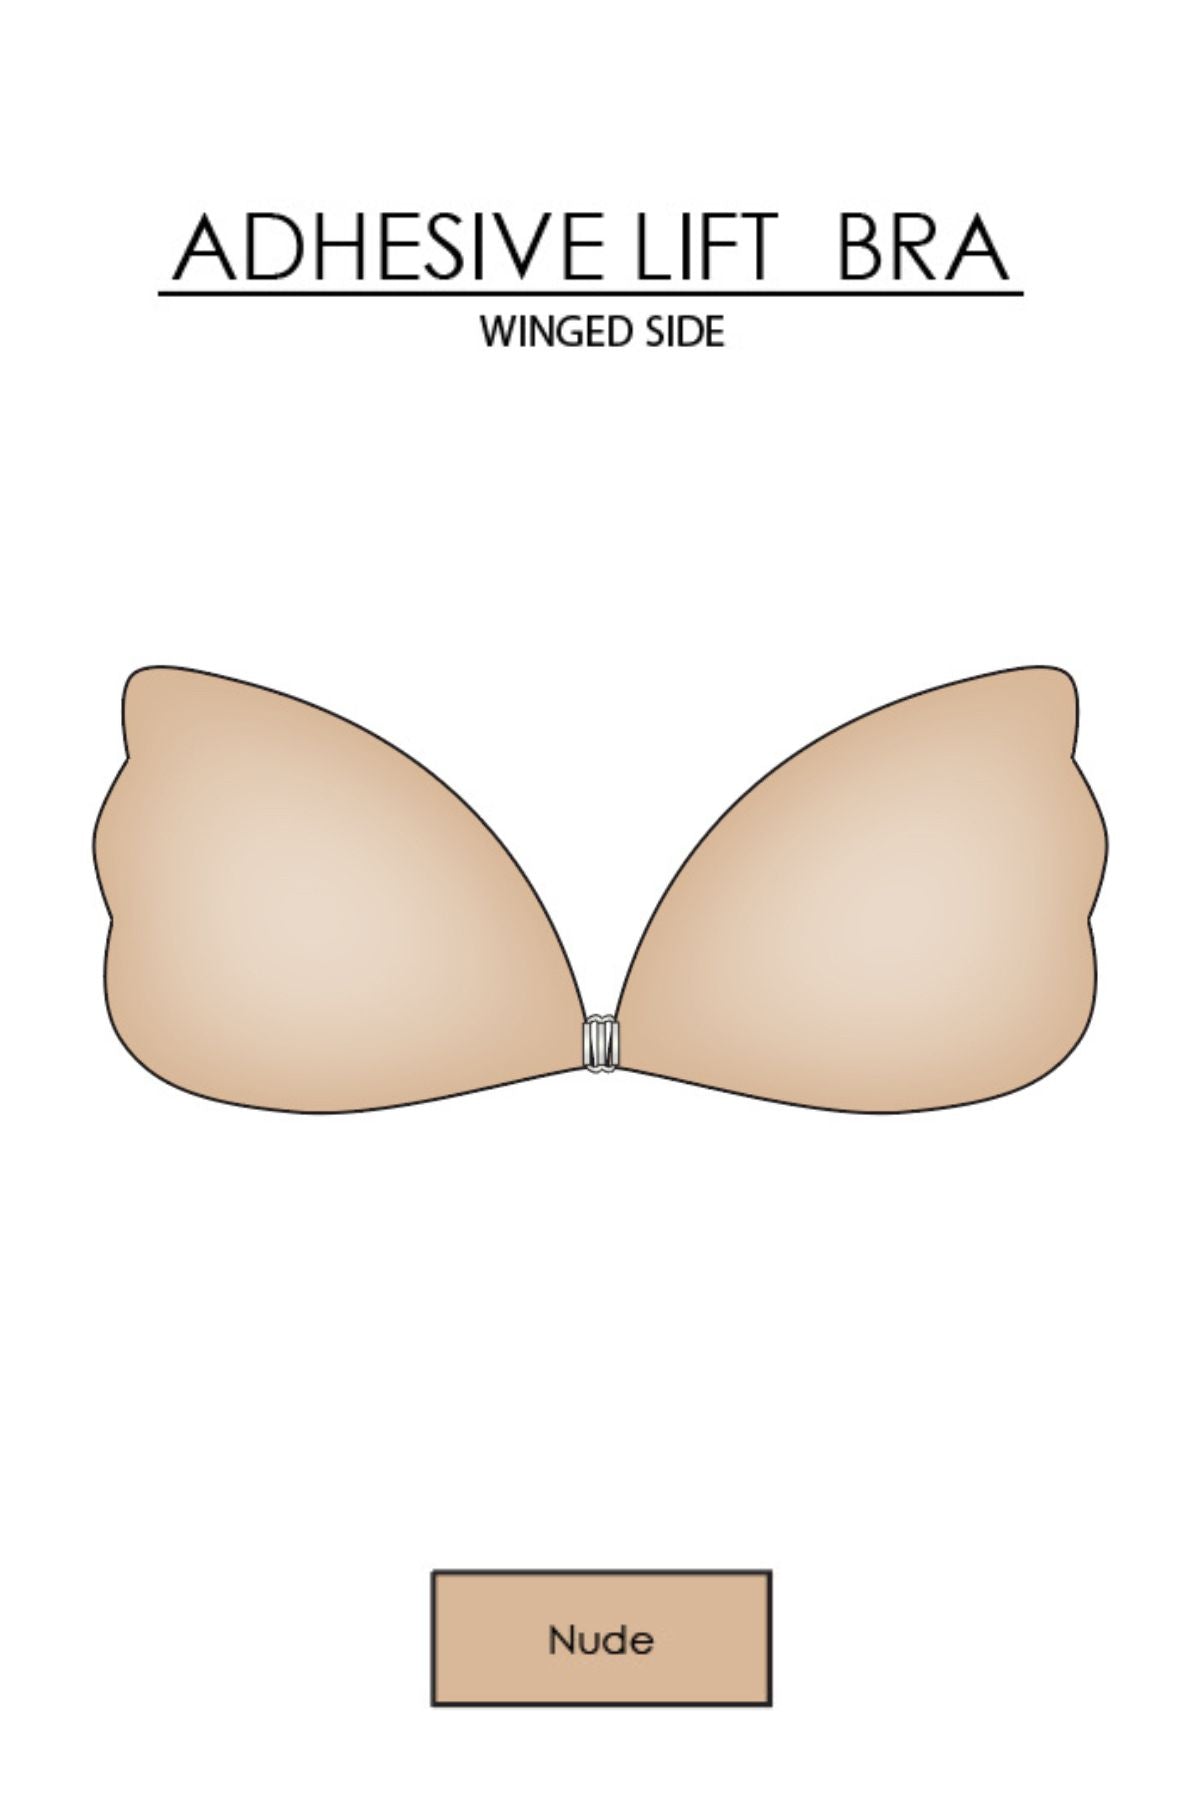 Adhesive Winged Bra